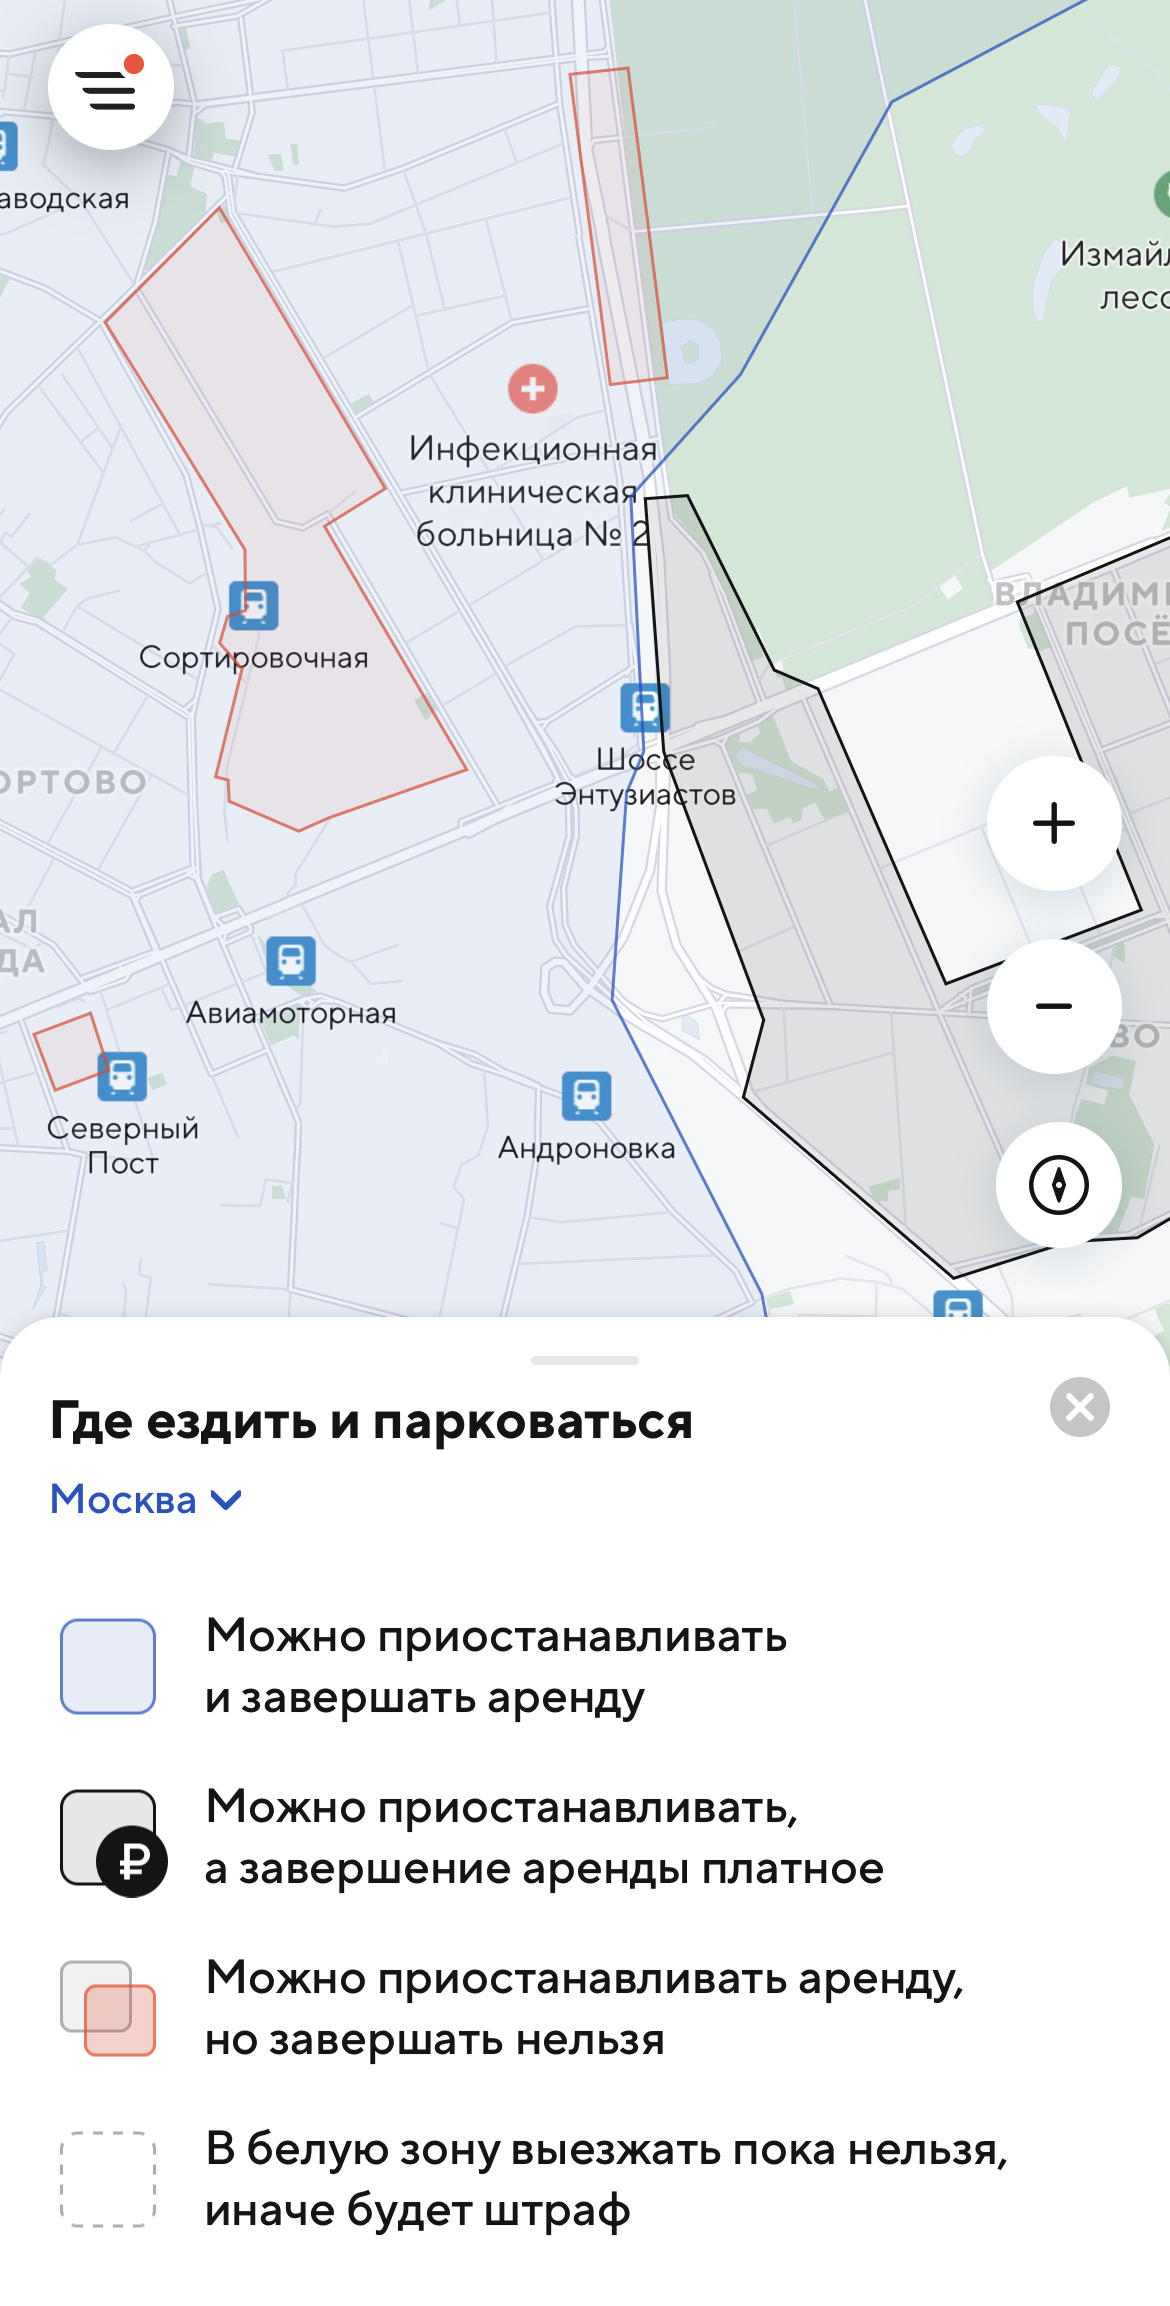 Зоны завершения аренды в приложениях «Ситидрайв», BelkaCar, «Яндекс-драйв»